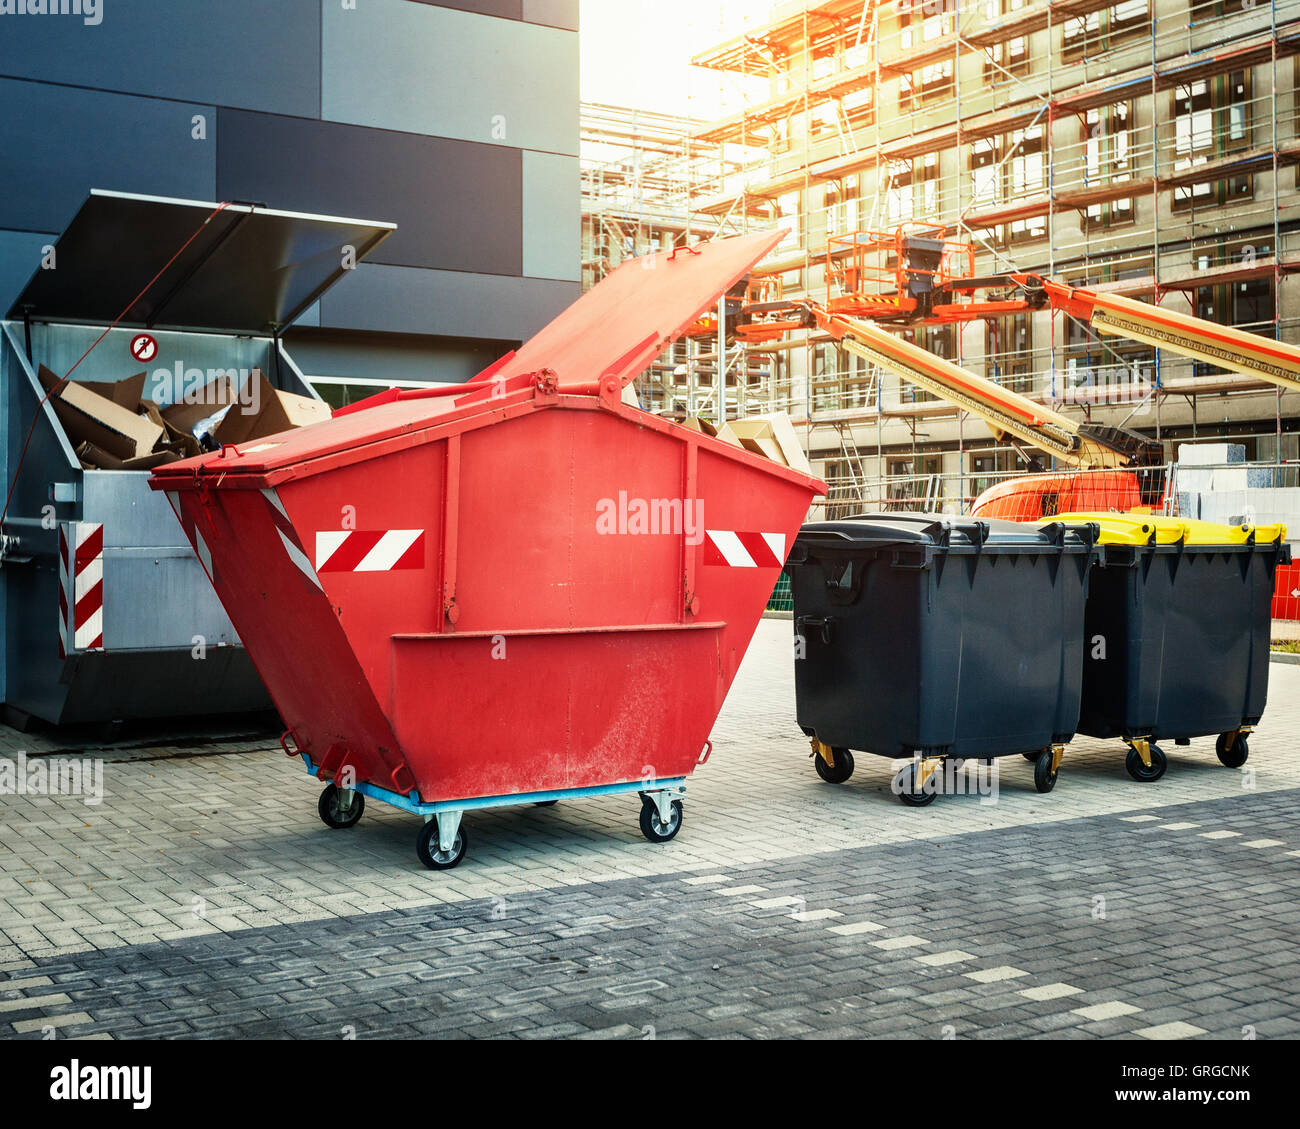 Roten Müllcontainer, Recycling, Abfall und Müll-Behälter in der Nähe von neues Bürogebäude. Baustelle auf Hintergrund Stockfoto